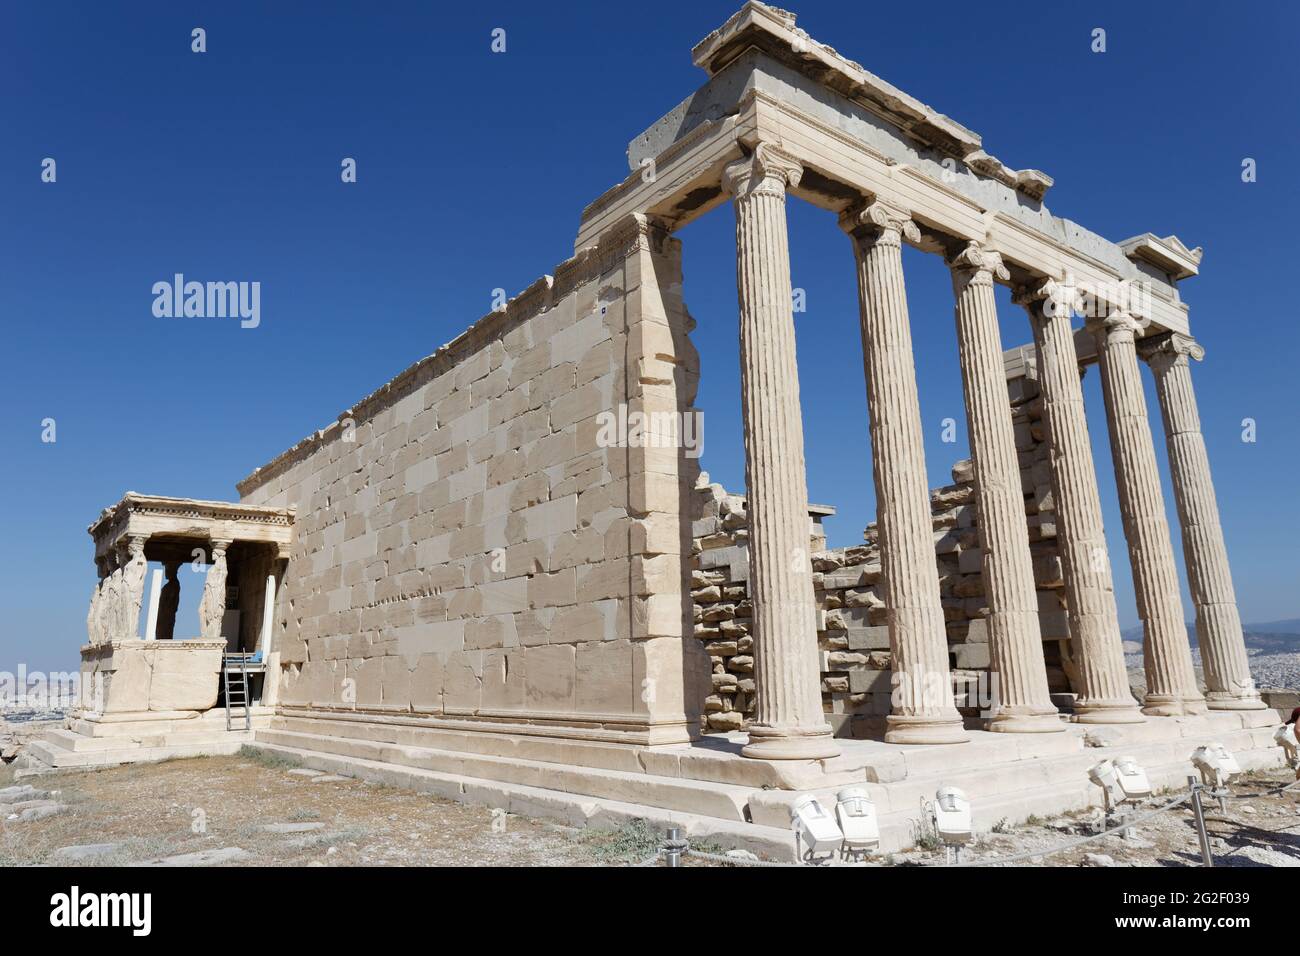 Alter Tempel der Athene - Akropolis von Athen - Athen Griechenland Stockfoto